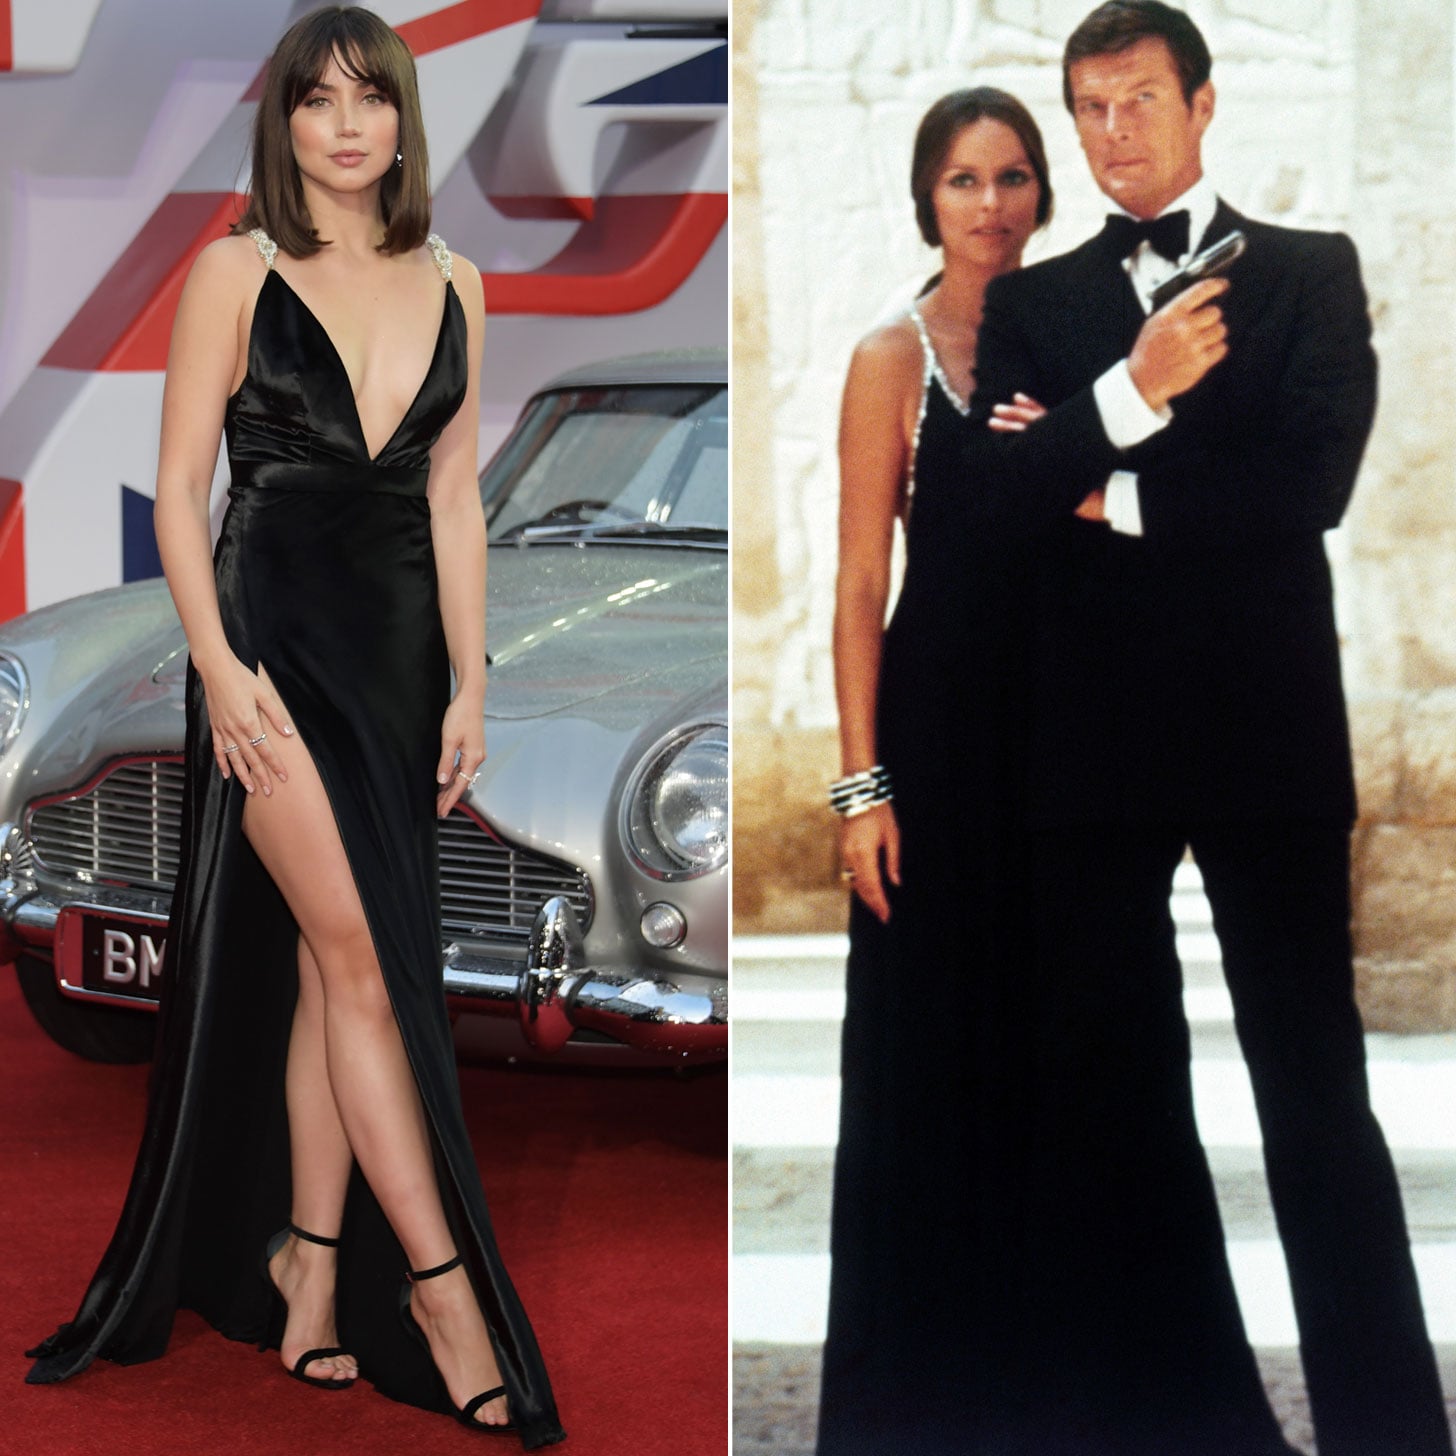 Ana de Armas says no need for female James Bond